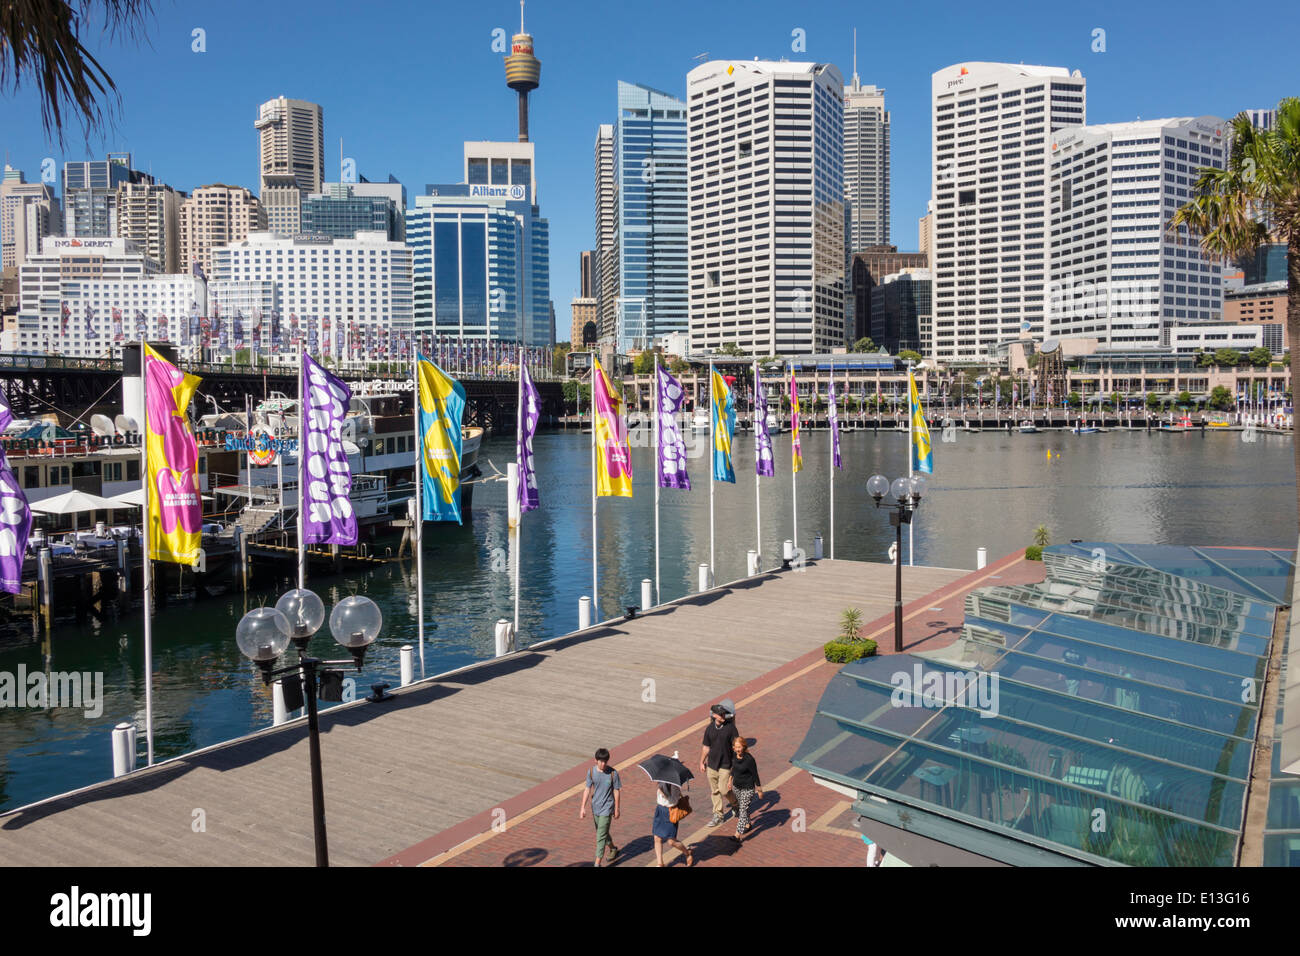 Sydney Australia, Darling Harbour, porto, Cockle Bay Promenade, acqua, Sydney Tower, grattacieli, skyline della città, AU140311062 Foto Stock